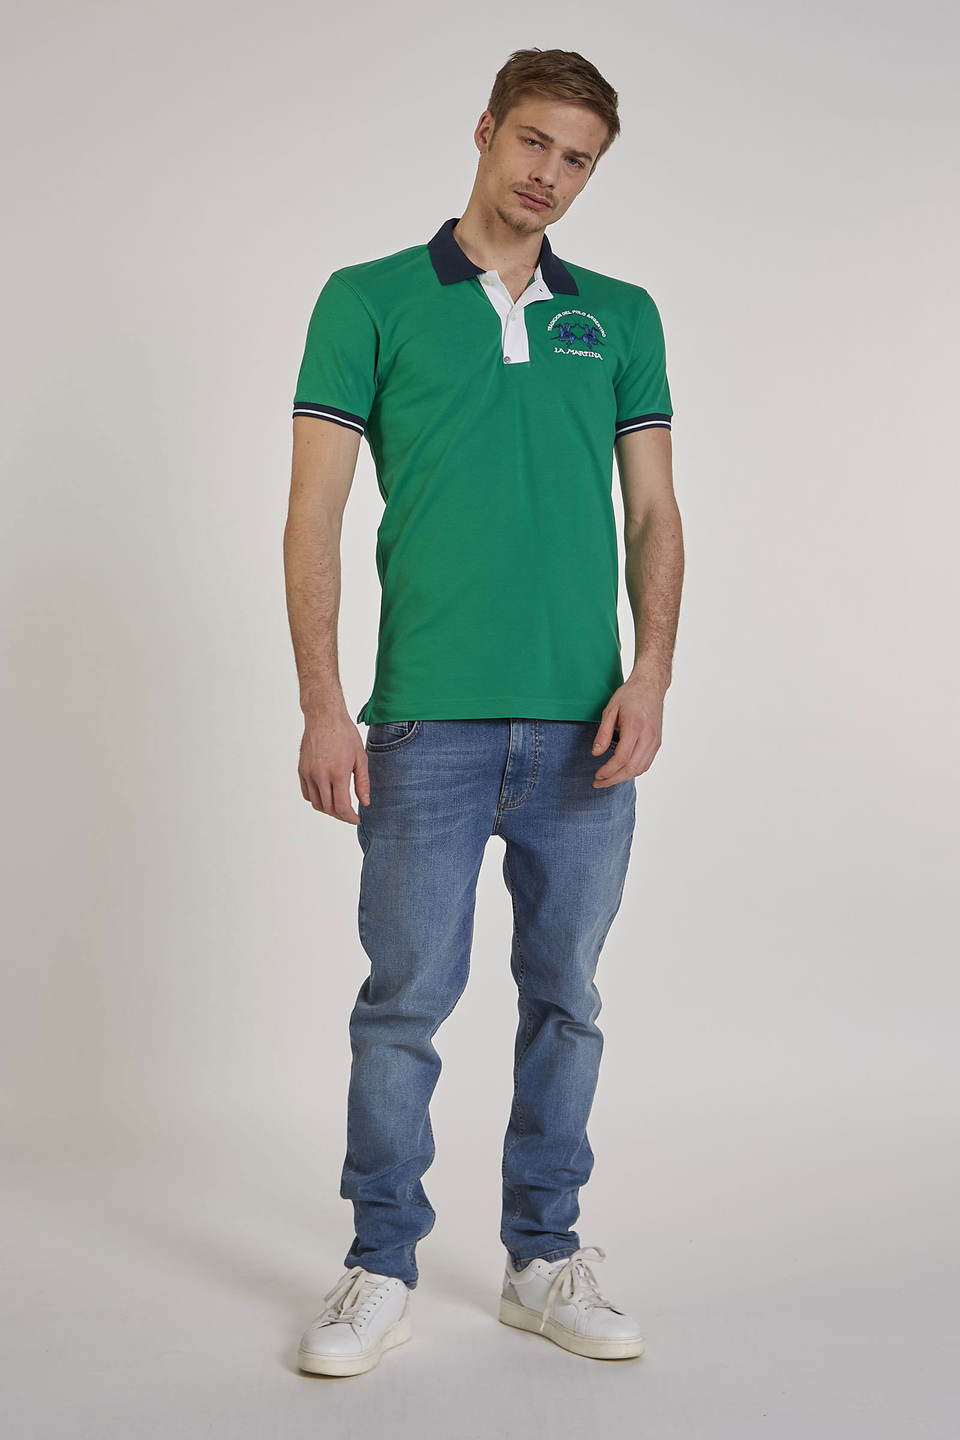 Polo homme en coton stretch à manches courtes et coupe slim | La Martina - Official Online Shop